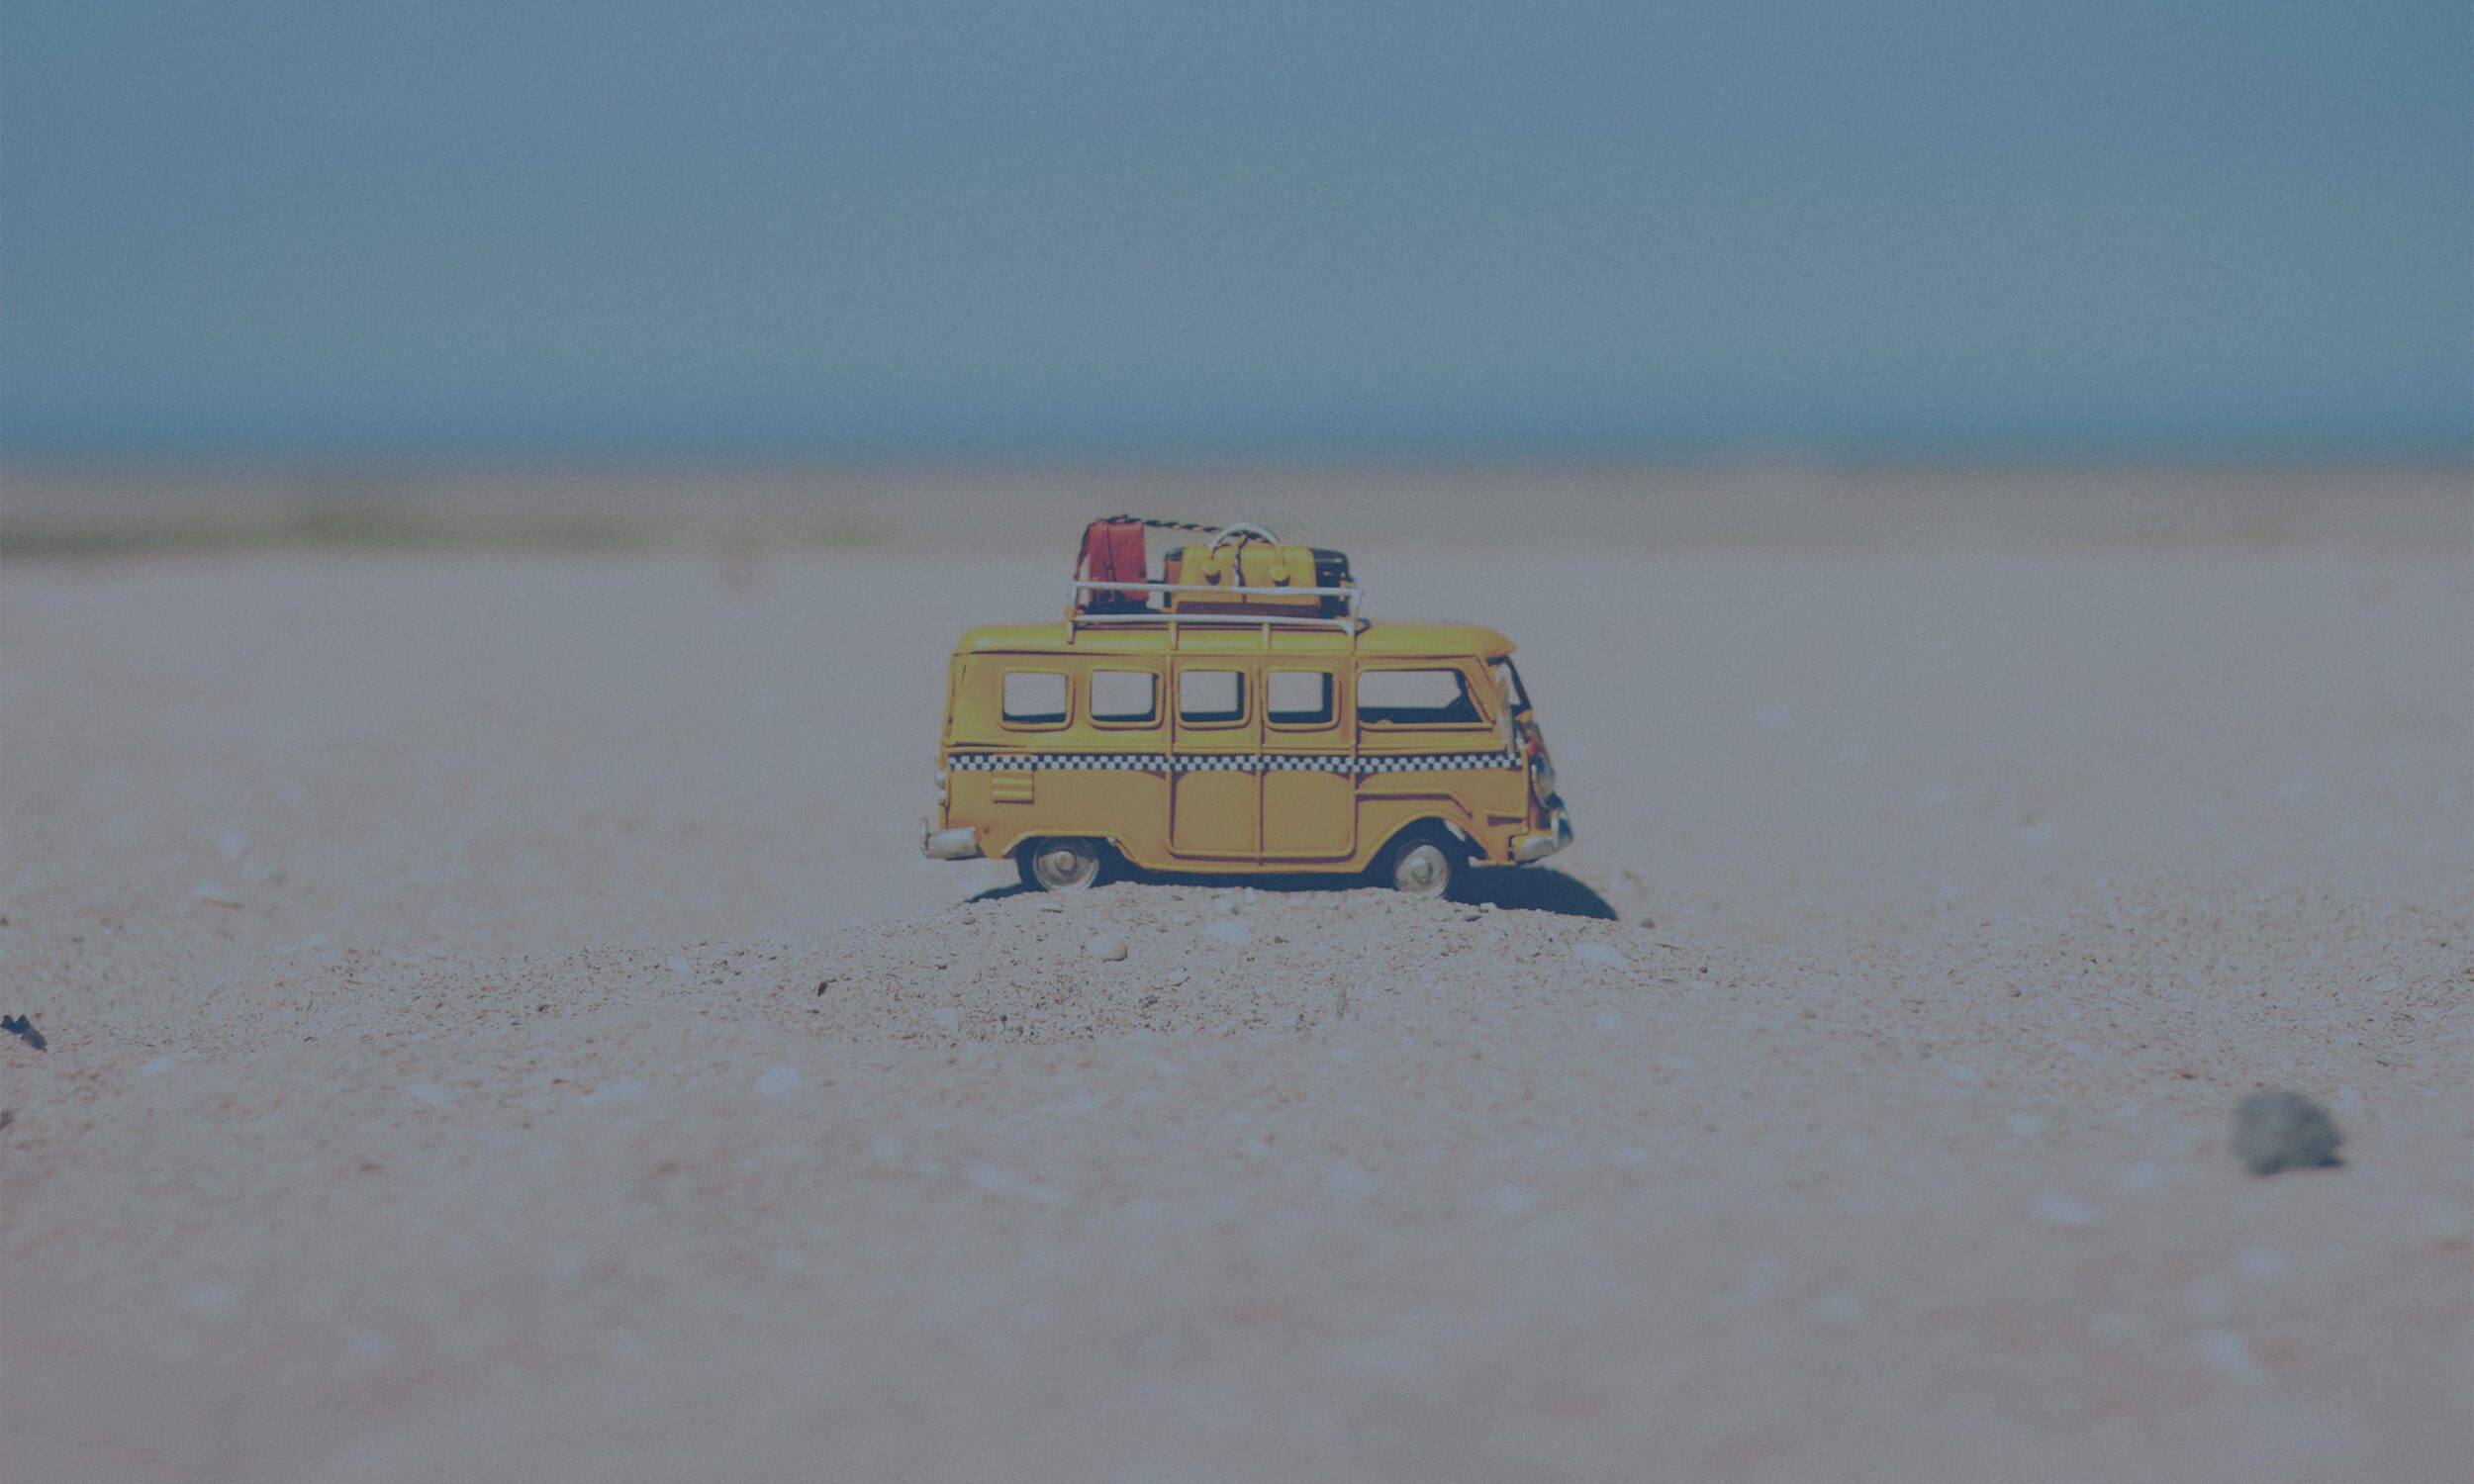 campervan toy on sand